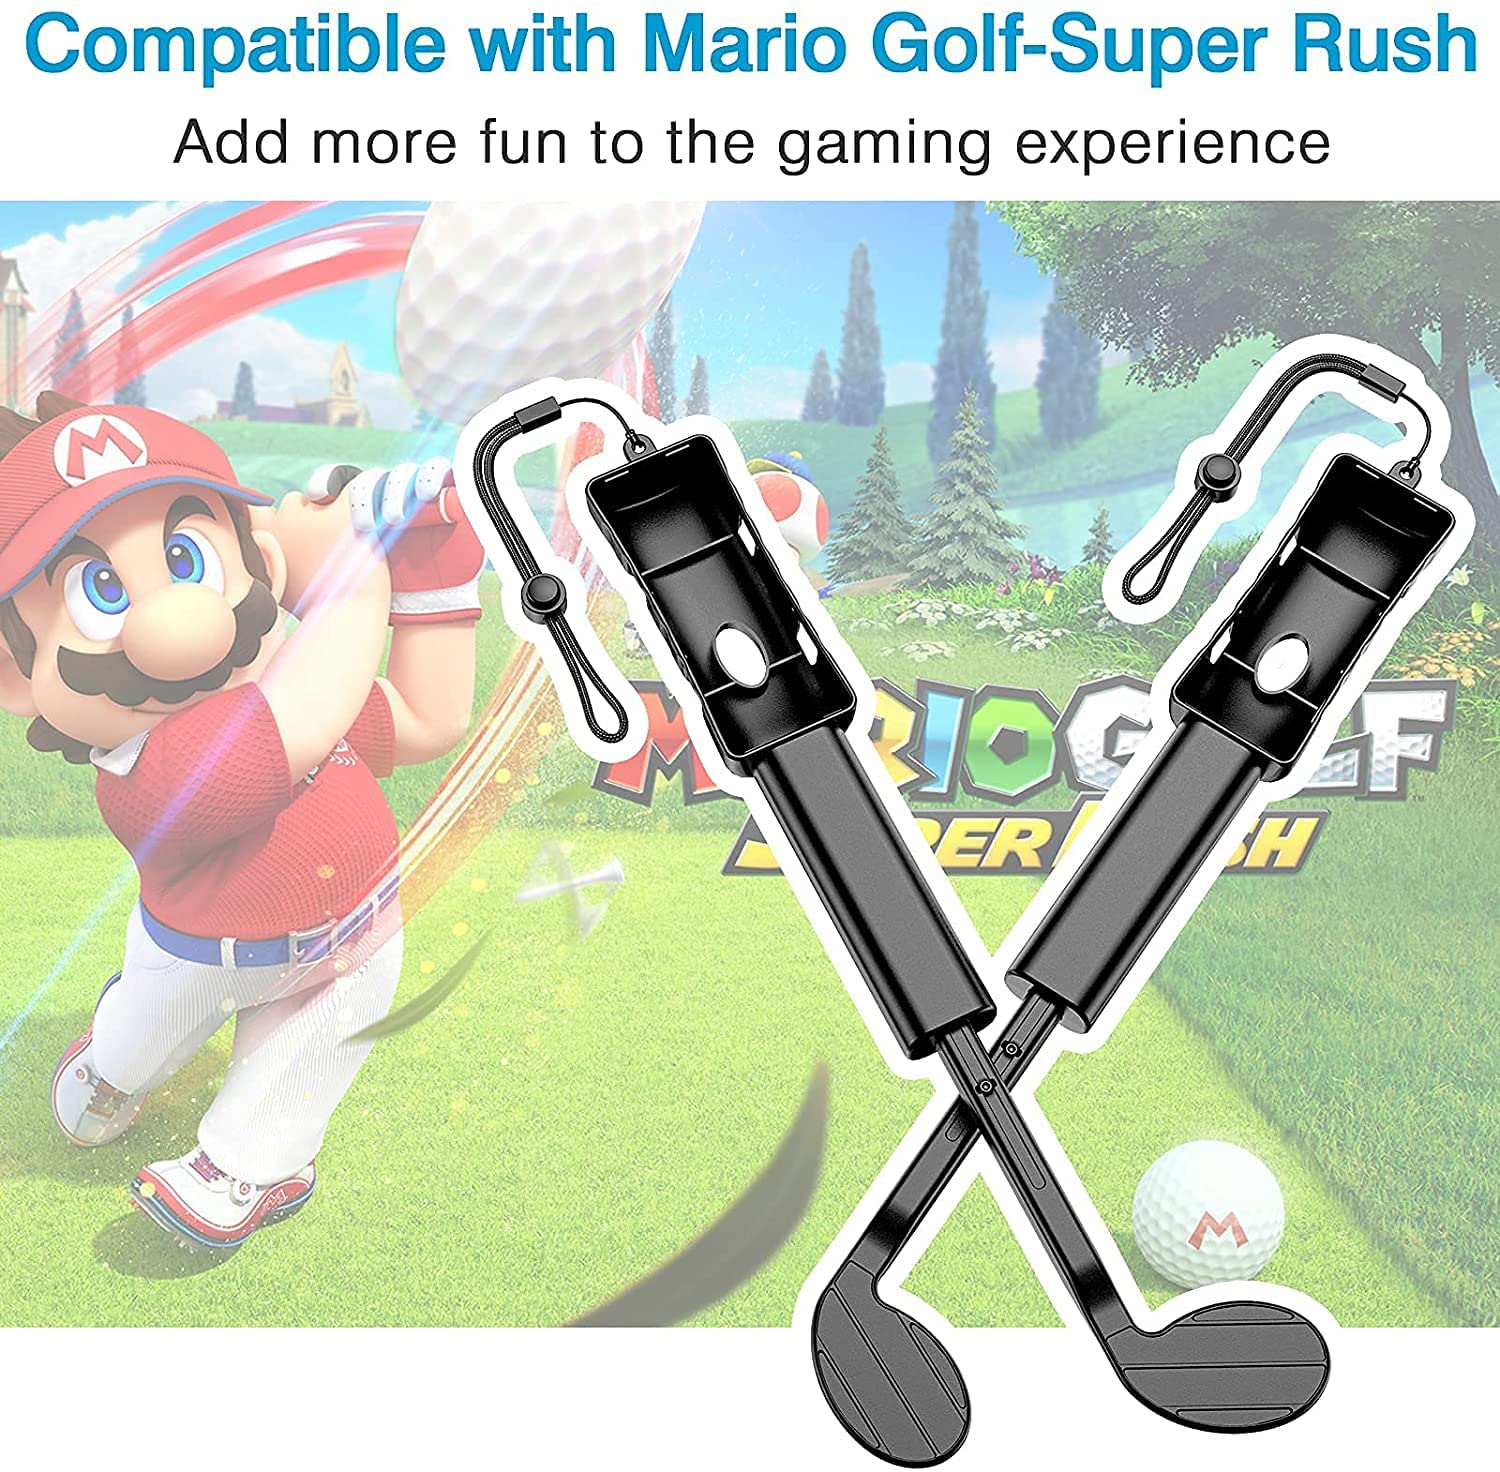 ゴルフロッド 2個セット Nintendo switch コントローラー マリオゴルフ スーパーラッシュ スイング 親子 大人 子供 ジョイコン  ジョイスティック スポーツ 運動 :tf-ch00329:どしろショップ - 通販 - Yahoo!ショッピング